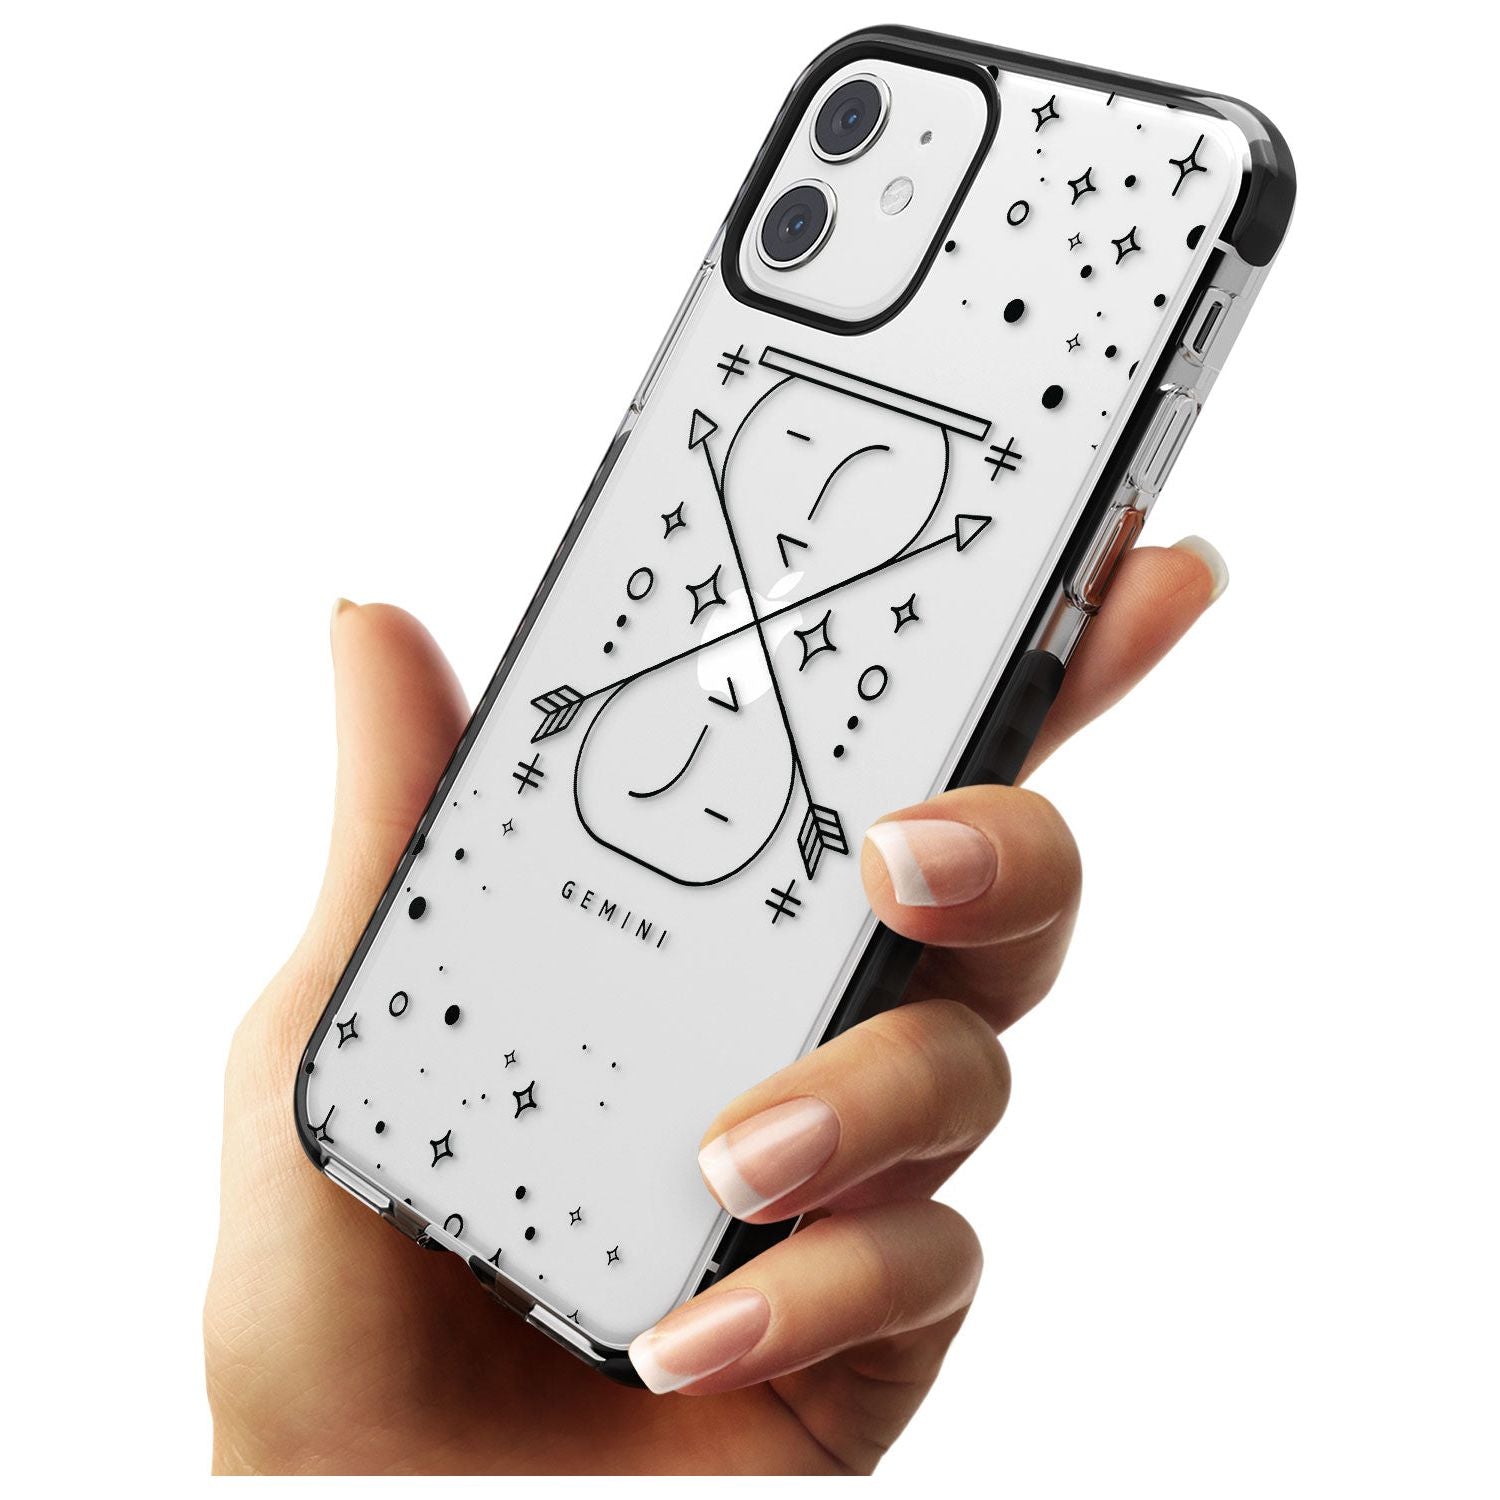 Gemini Emblem - Transparent Design Black Impact Phone Case for iPhone 11